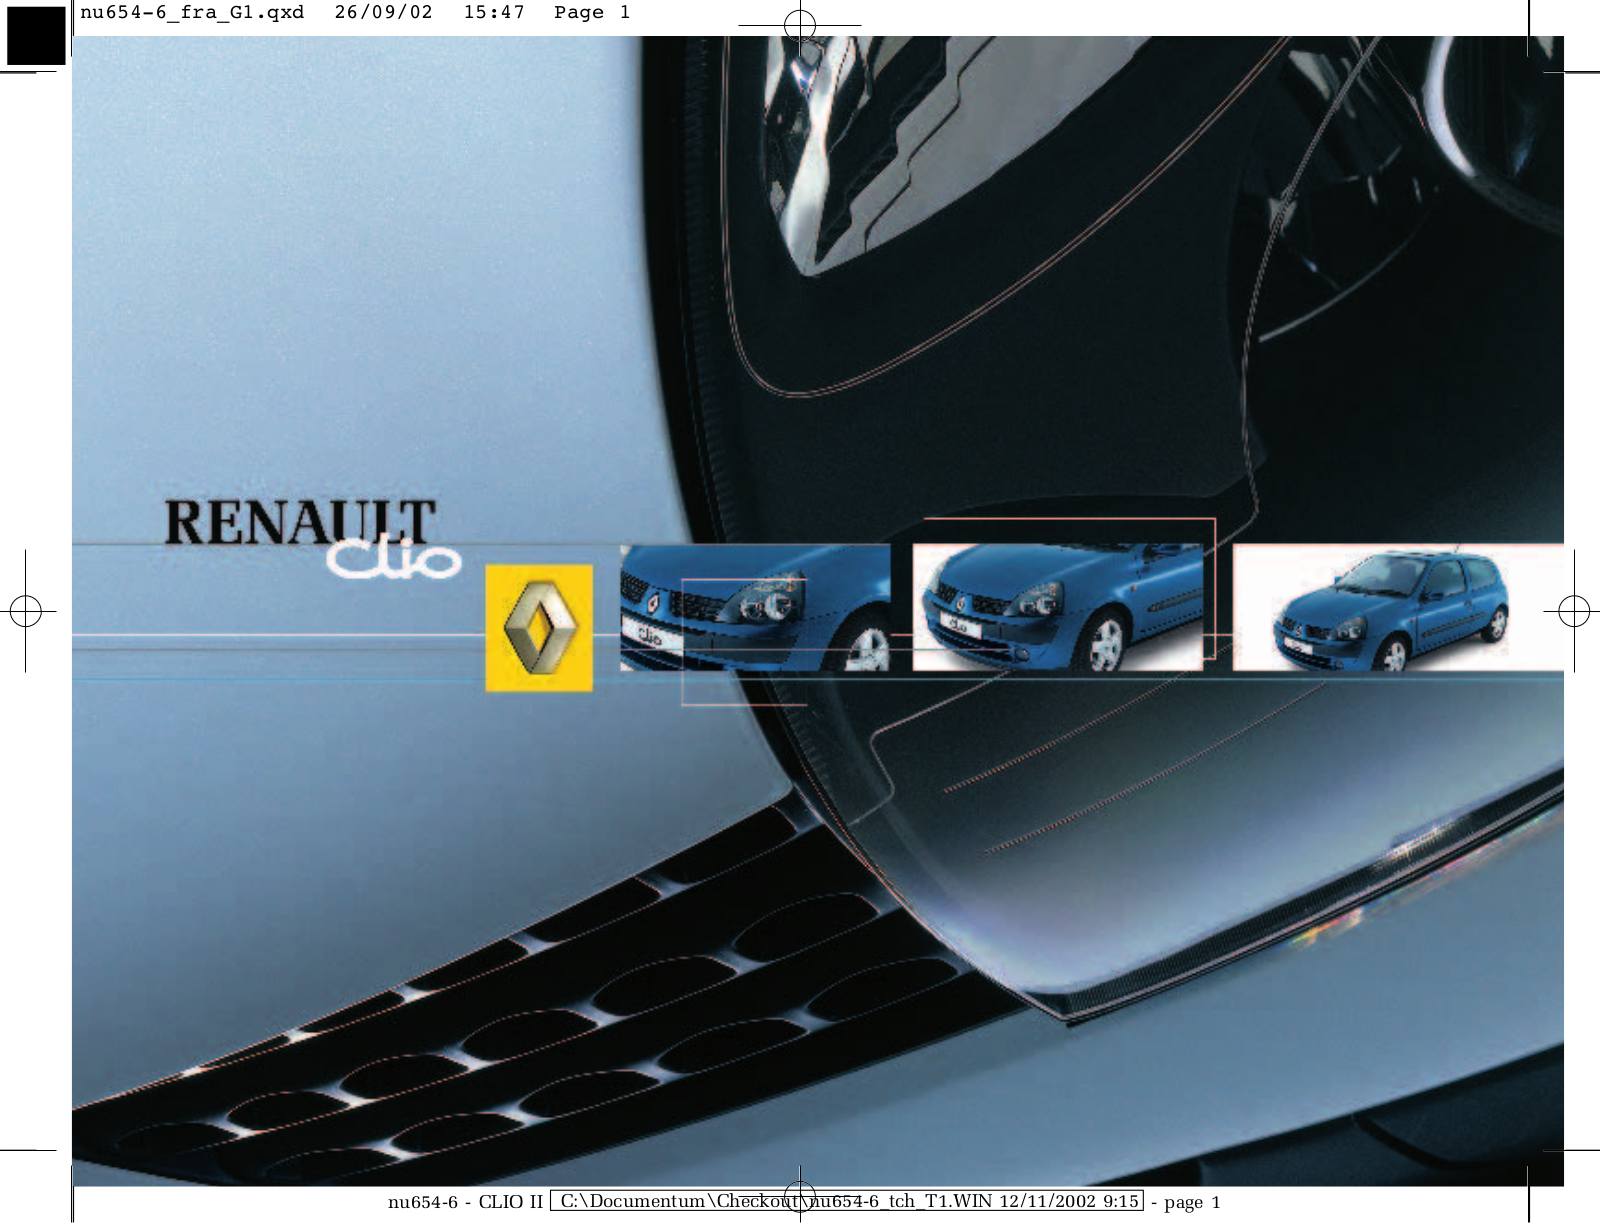 Renault Clio 2002 User Manual